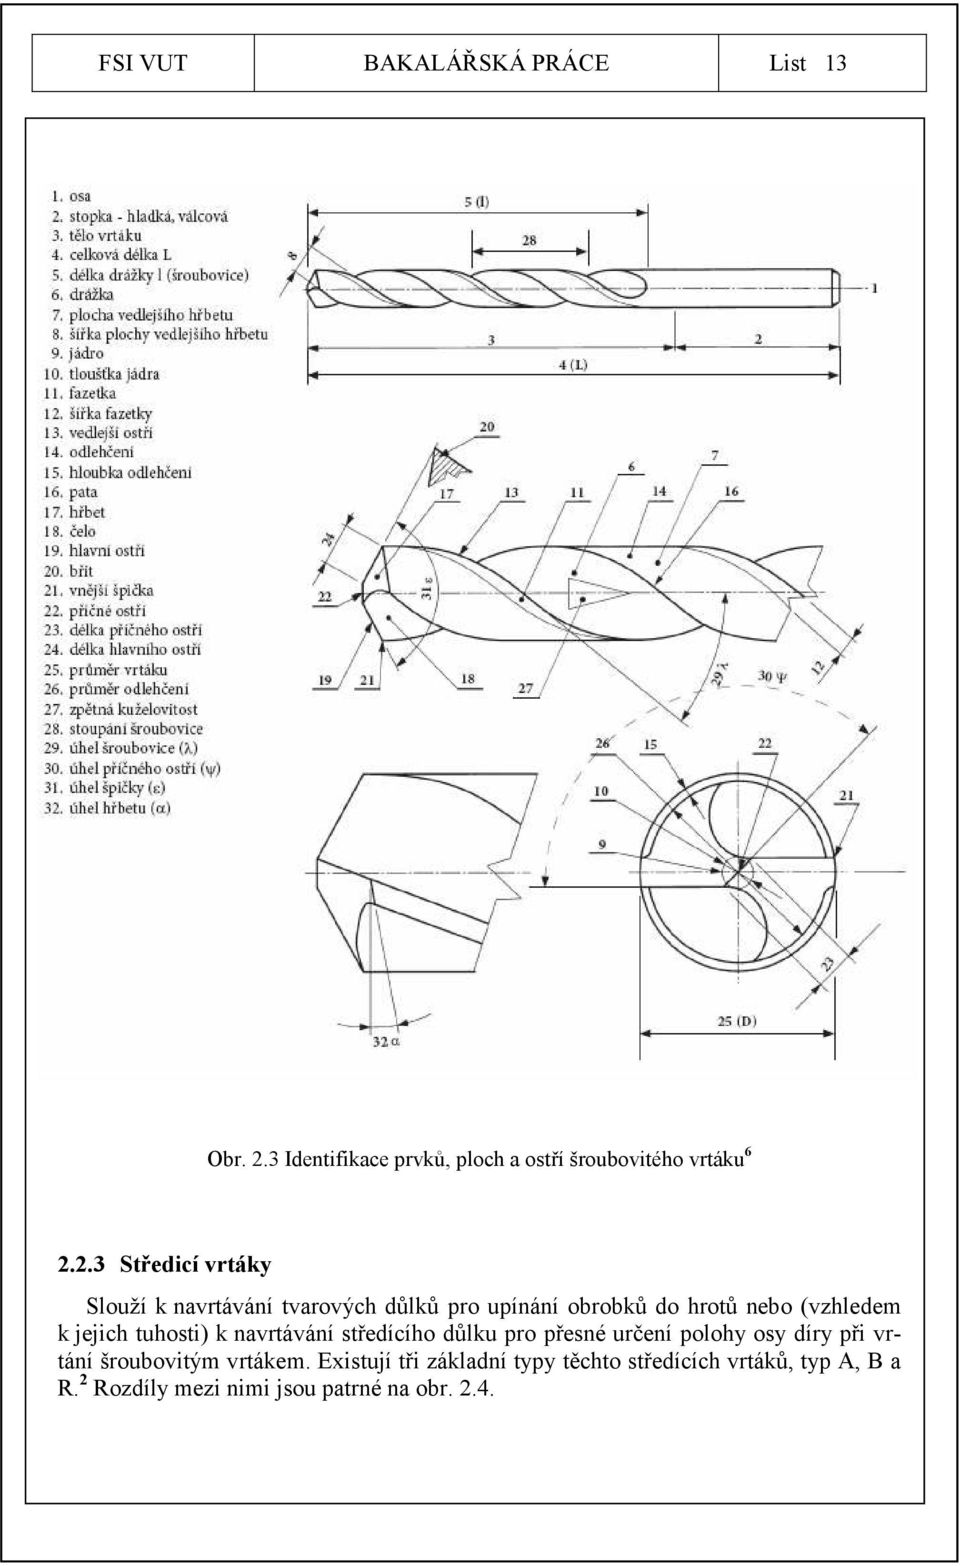 2.3 Středicí vrtáky Slouží k navrtávání tvarových důlků pro upínání obrobků do hrotů nebo (vzhledem k